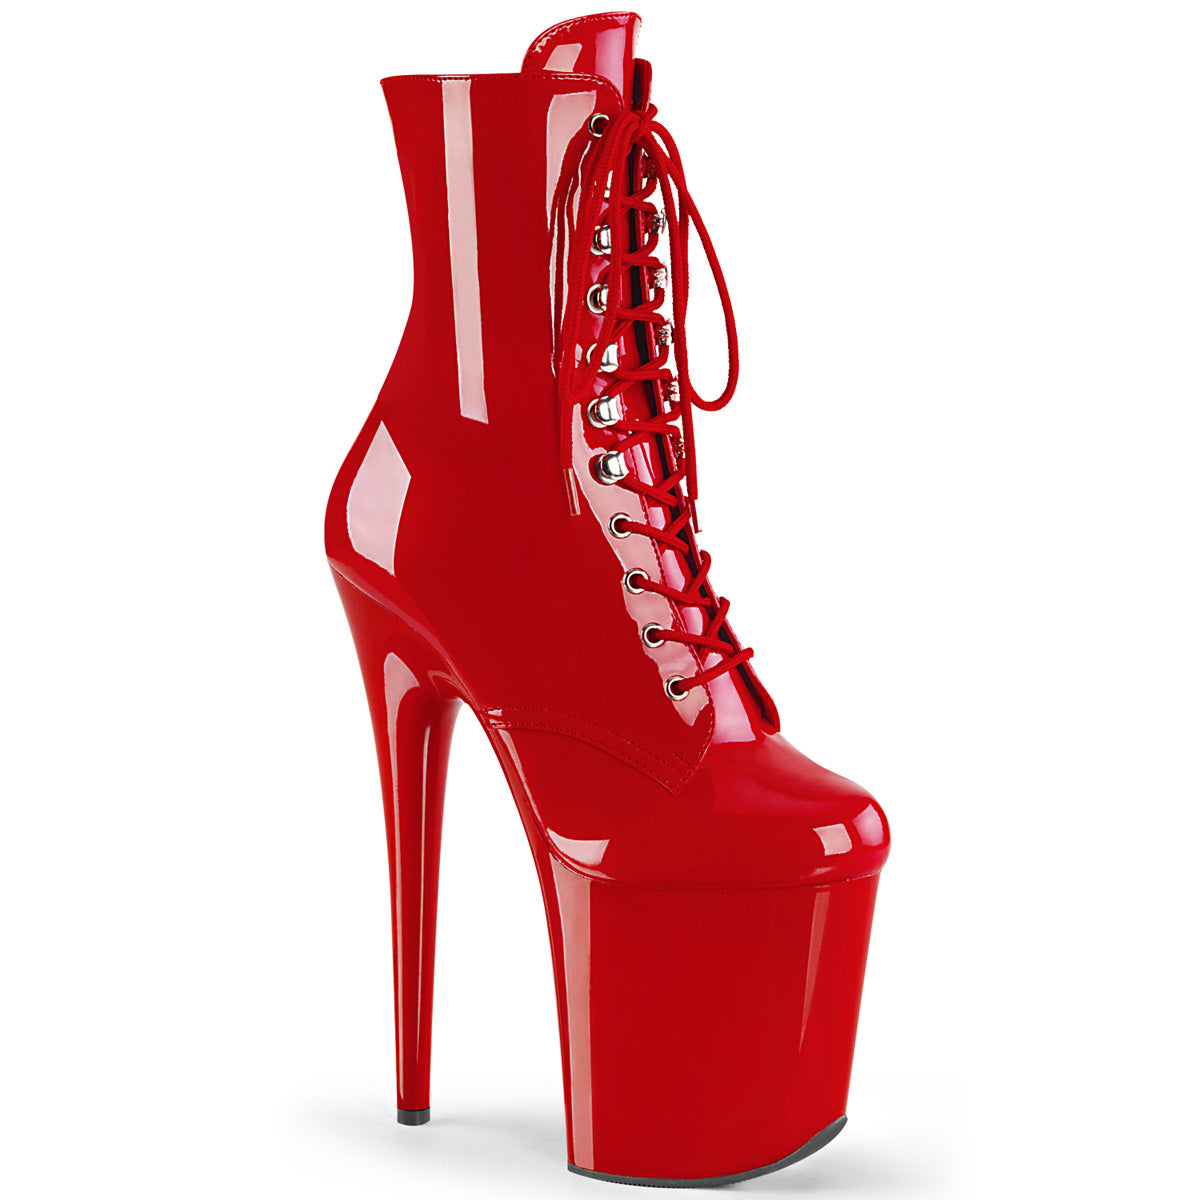 FLAMINGO-1020 Pleasers 8 Inch Heel Red Stripper Platforms High Heel Boots